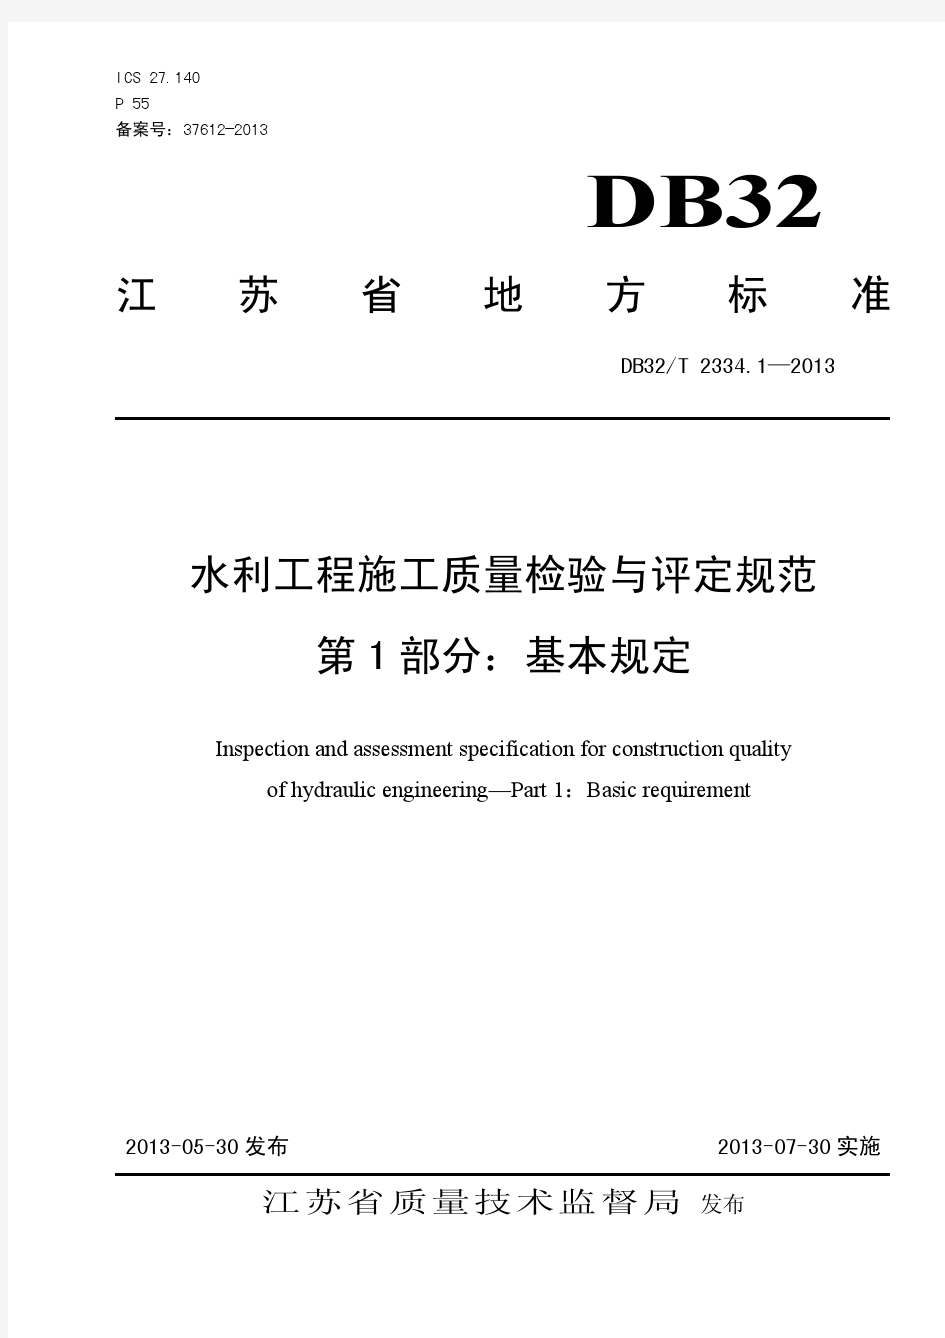 水利工程施工质量检验与评定规范(DB32T2334.1-2013)第1部分